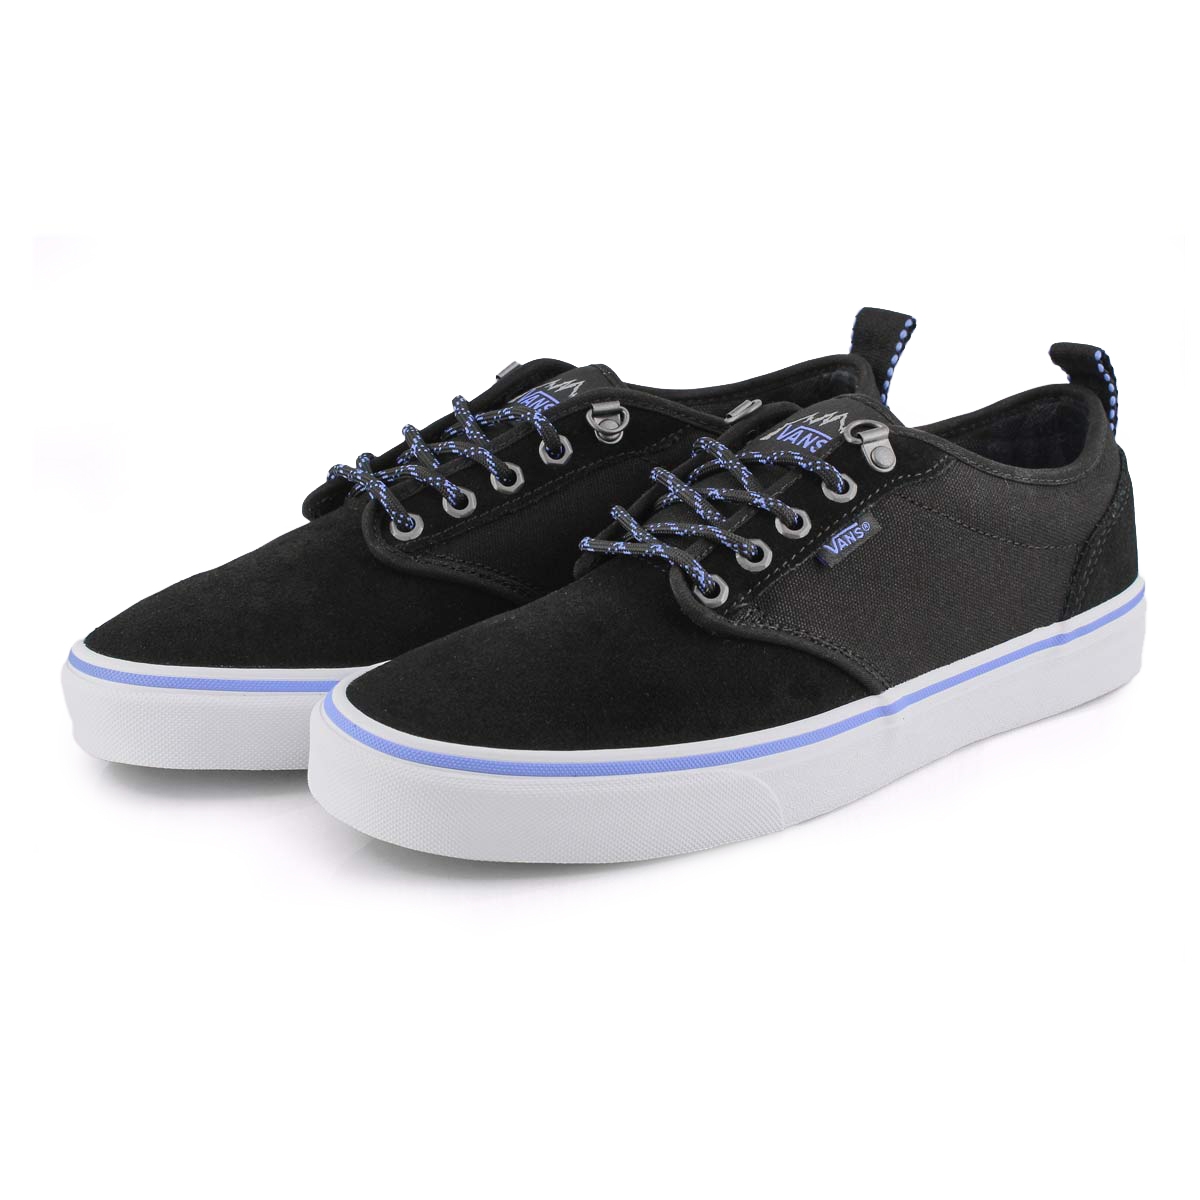 Vans Men's Atwood Sneaker -Black/ White | SoftMoc.com